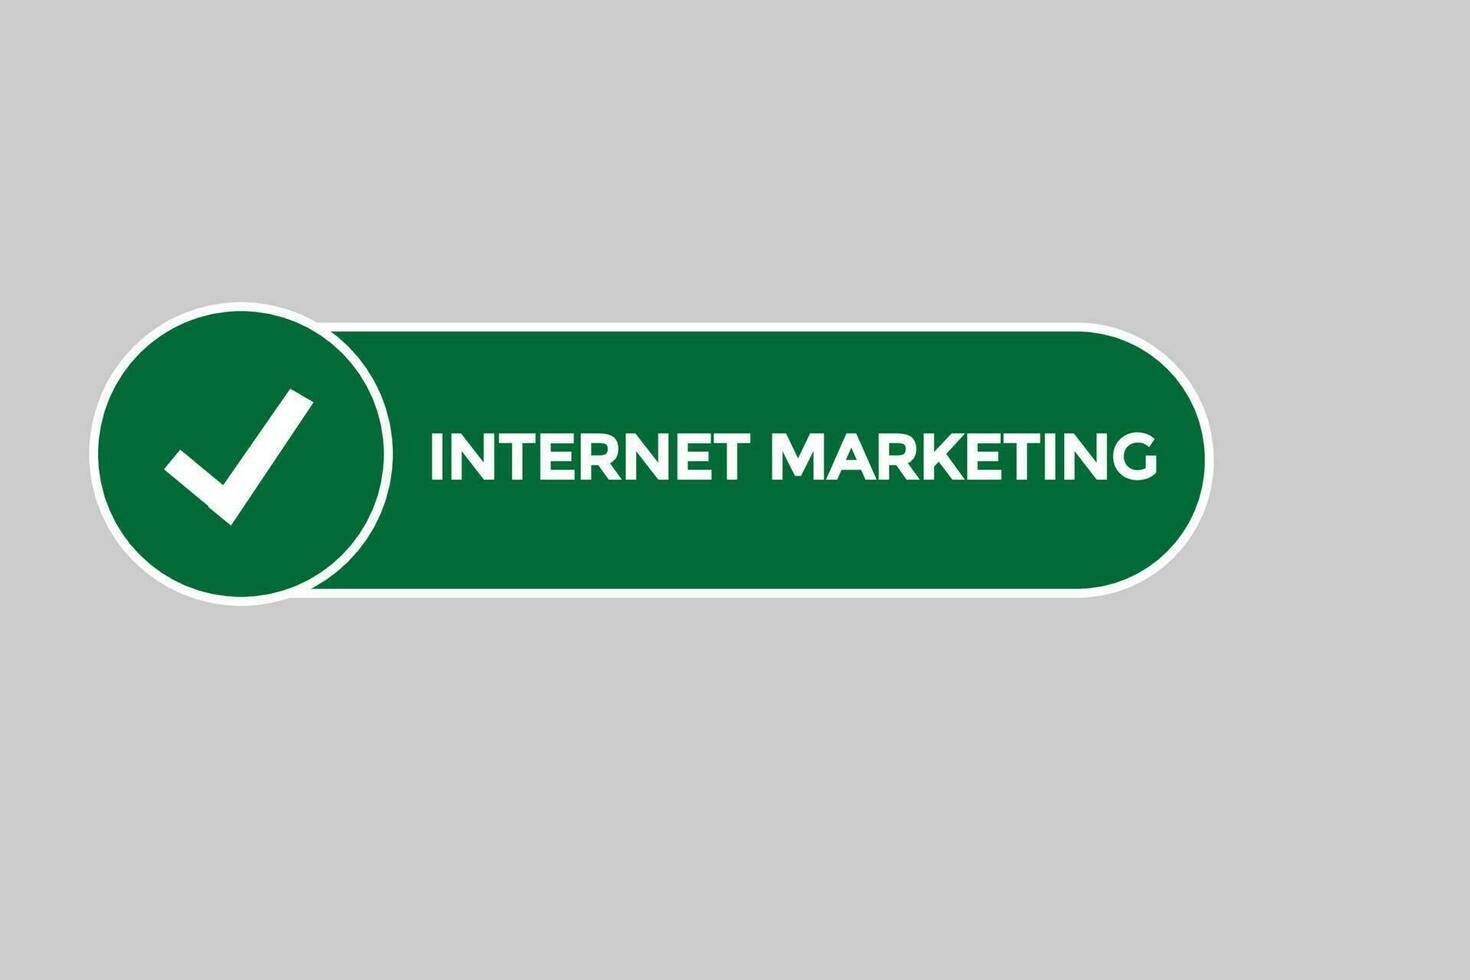 Internet Marketing vectors.sign Etikette Blase Rede Internet Marketingl vektor